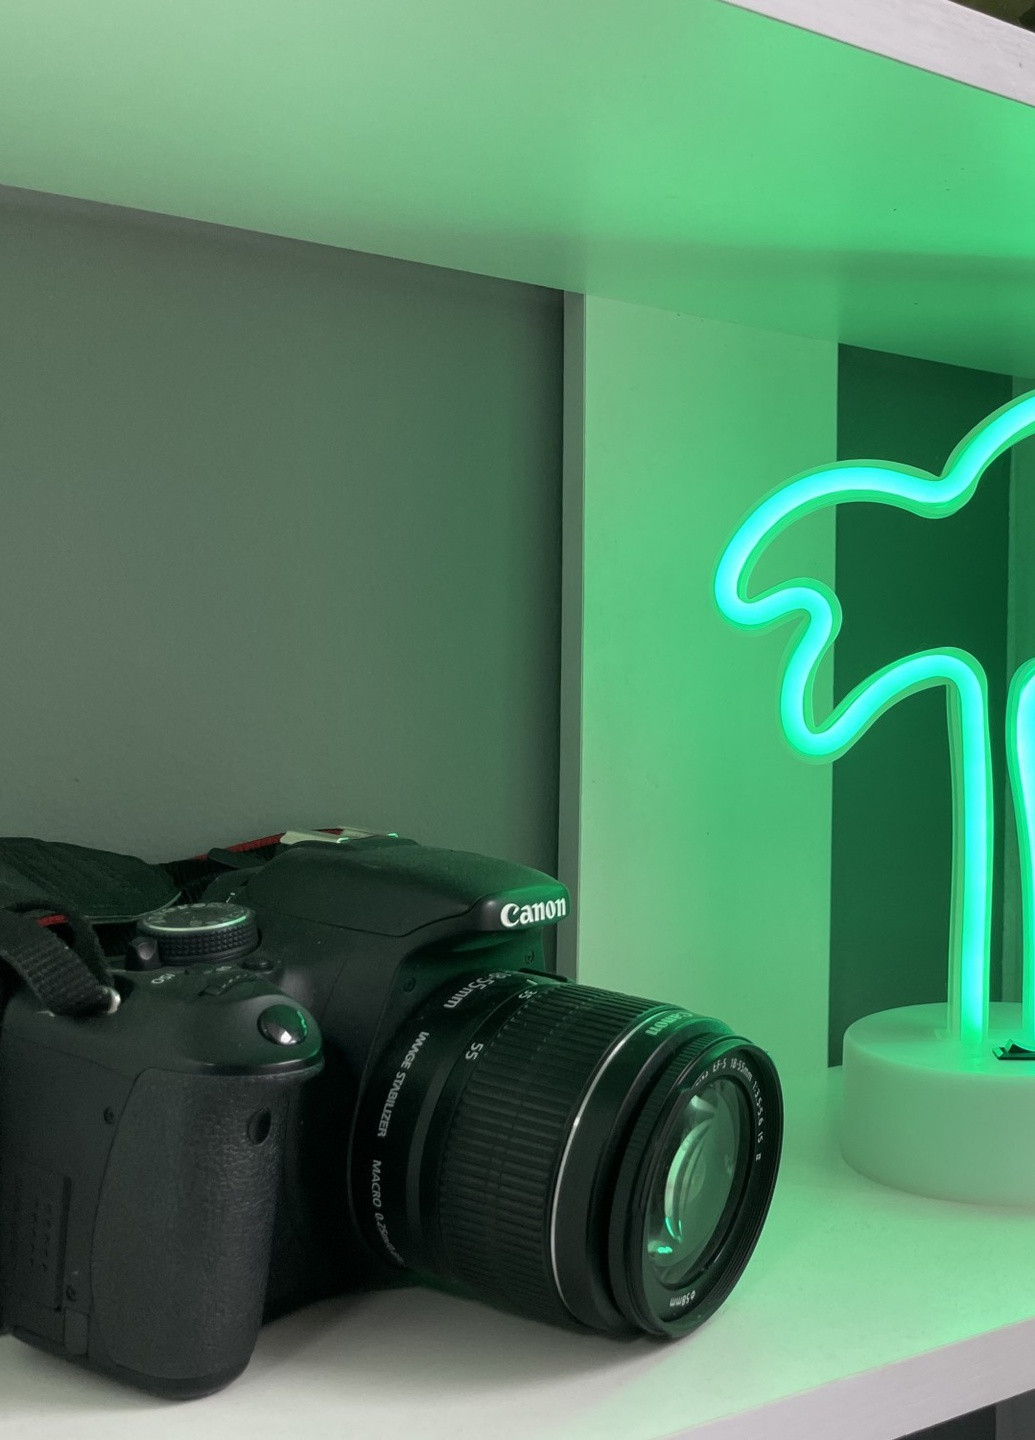 Настільний декоративний неоновий світильник-нічник Пальма (29,5х14,5 см, USB або батареї) - Зелений Forus neon decoration lamp (257033356)